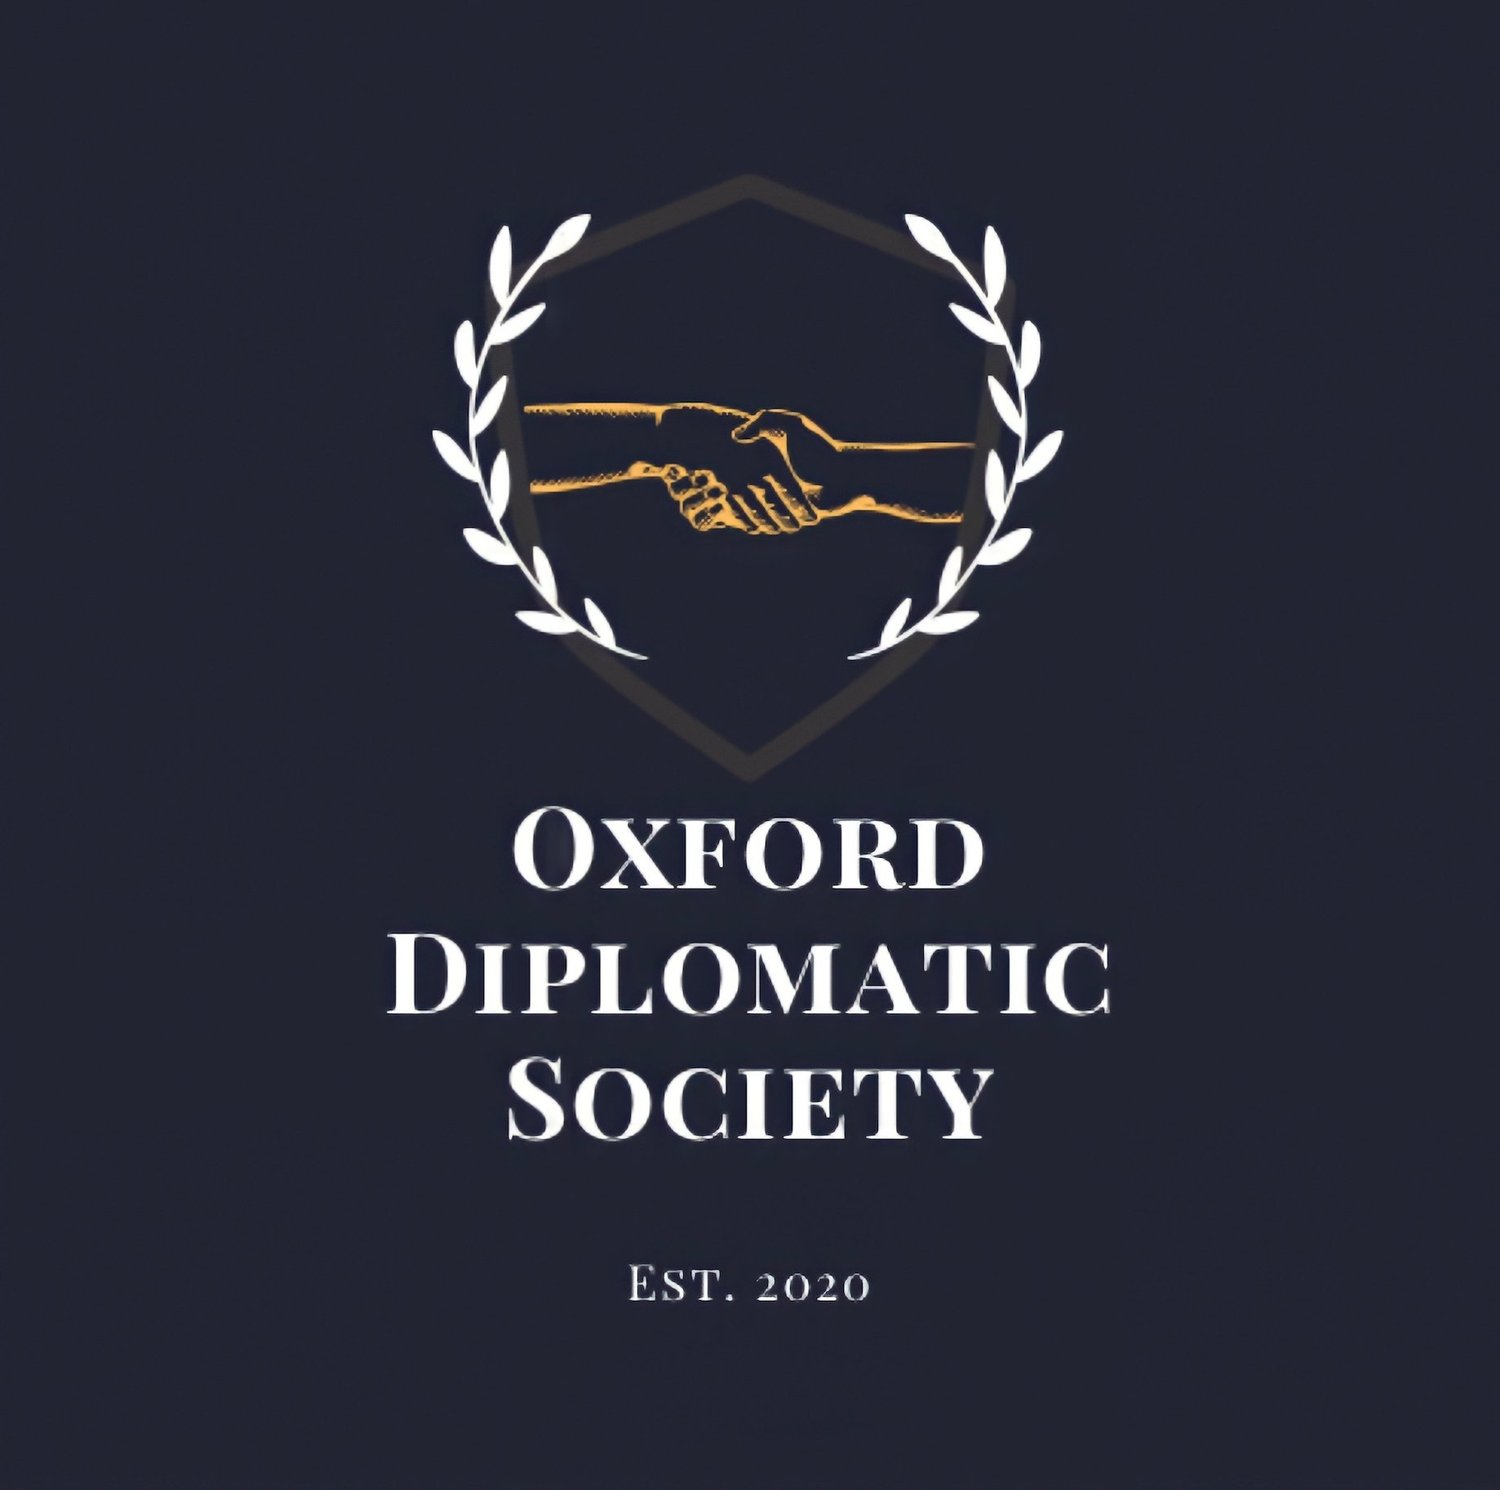 Oxford Diplomatic Society